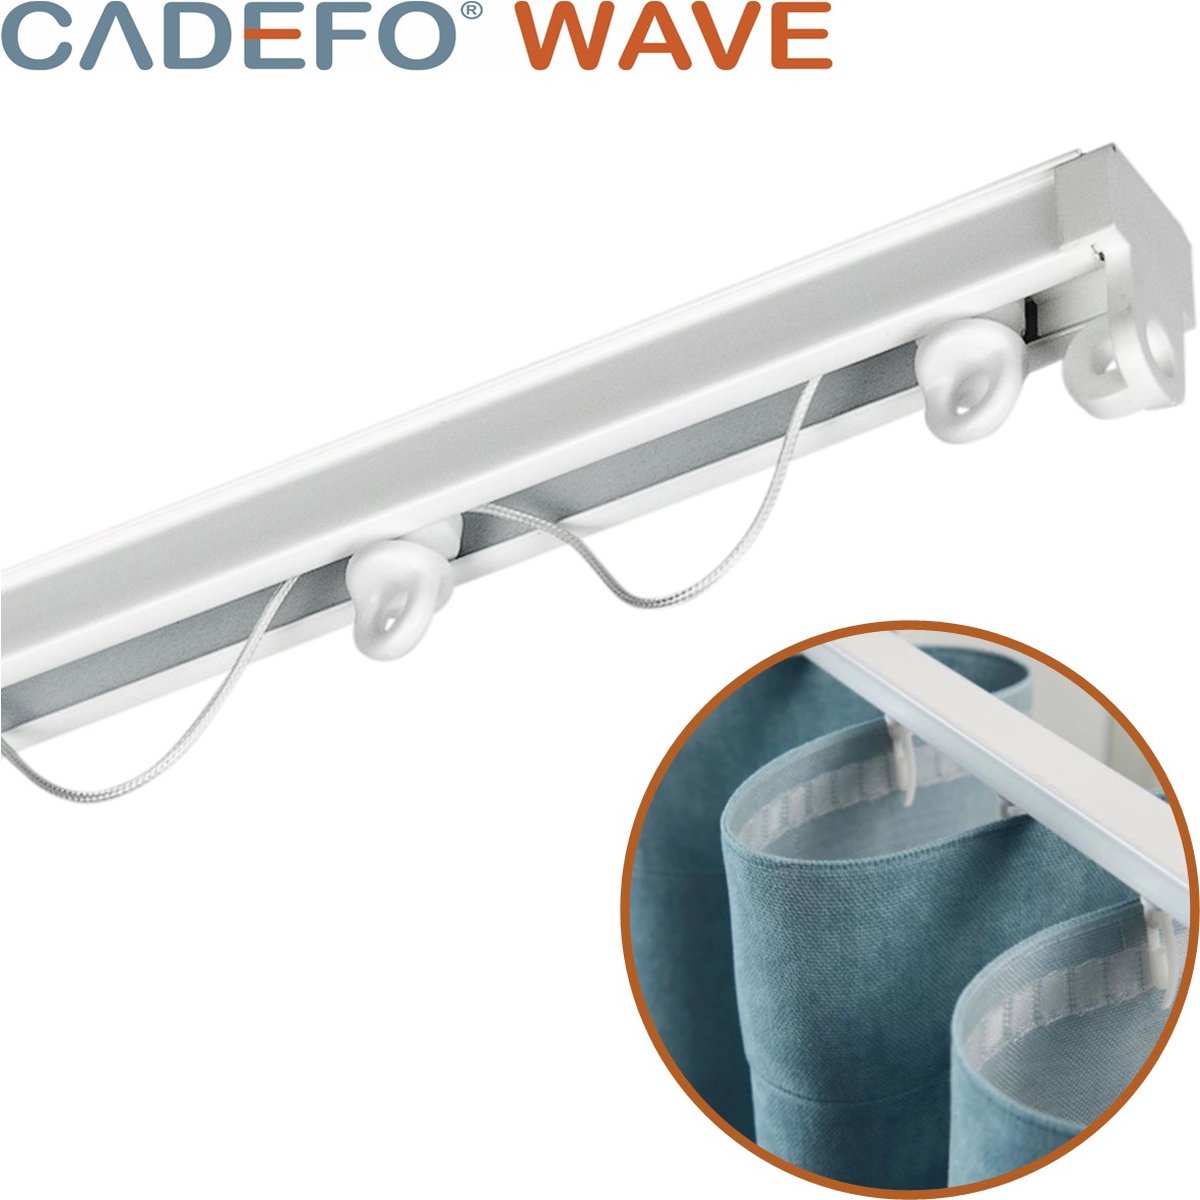 CADEFO WAVE (151 - 200 cm) Gordijnrails - Compleet op maat! - UIT 1 STUK - Leverbaar tot 6 meter - Plafondbevestiging - Lengte 171 cm